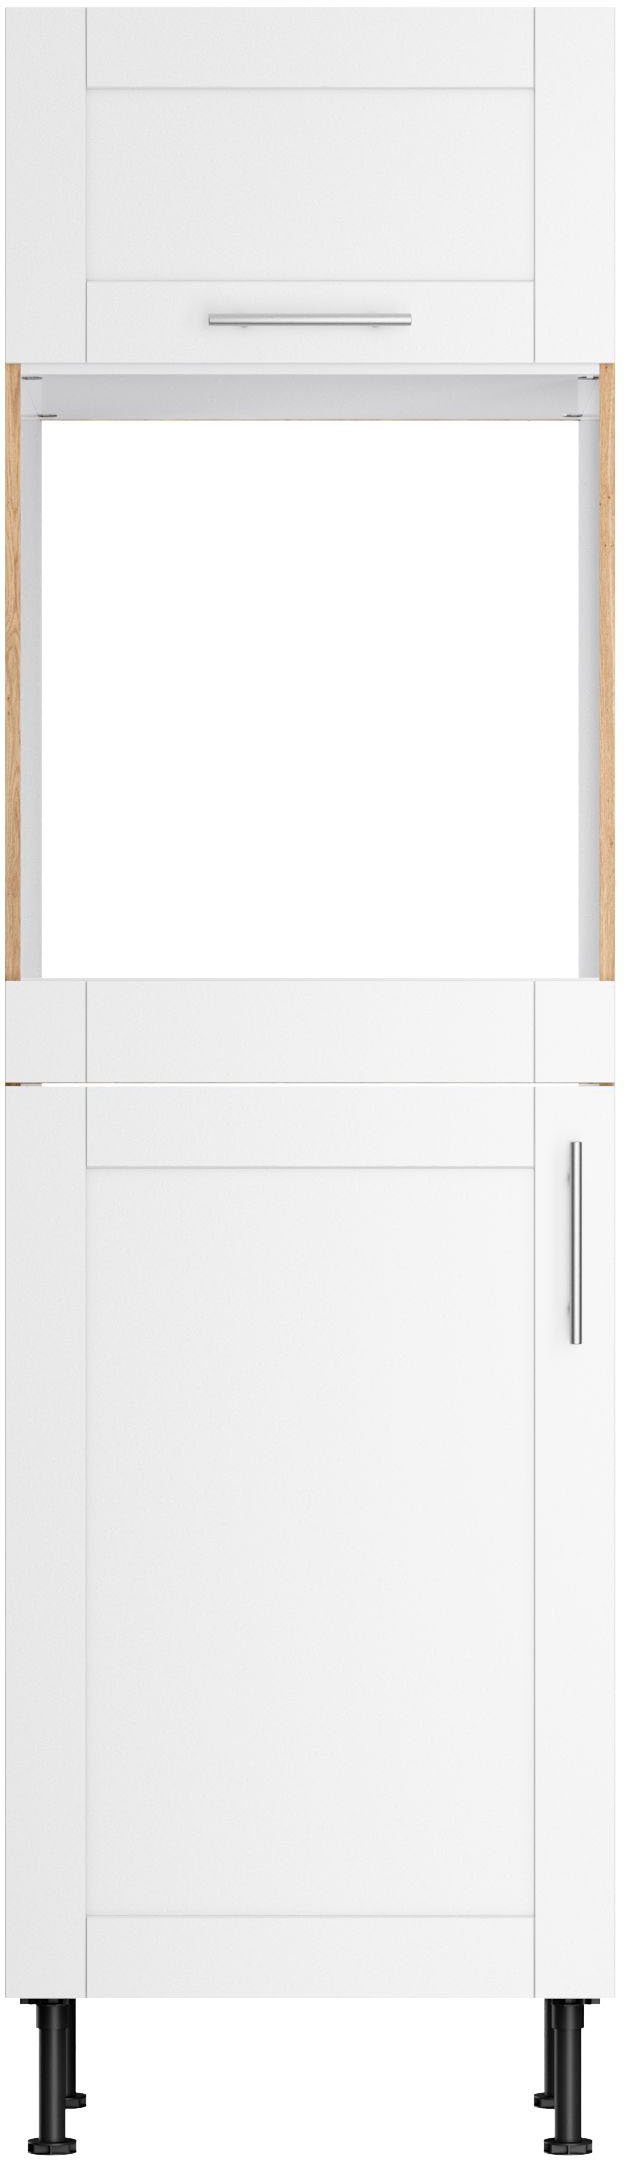 OPTIFIT Oven/koelkastombouw Ahus Breedte 60 cm